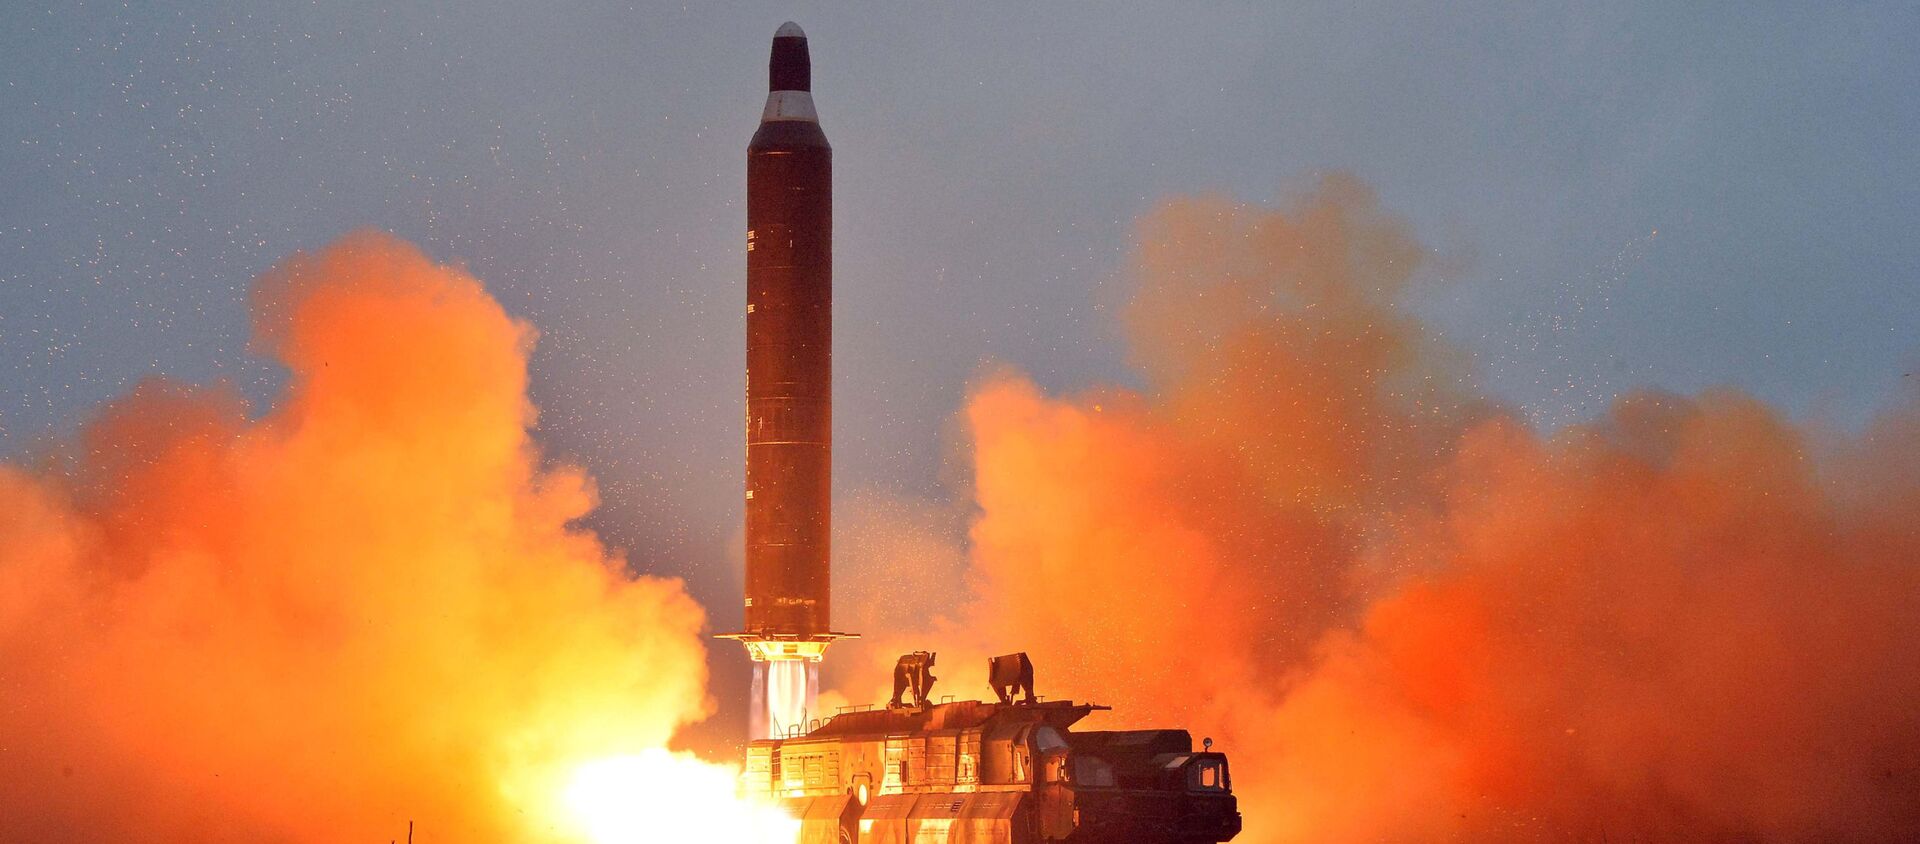  کوریای شمالی گزارش آزمایش موشک جدید مافوق صوت را تایید کرد - اسپوتنیک افغانستان  , 1920, 29.09.2021